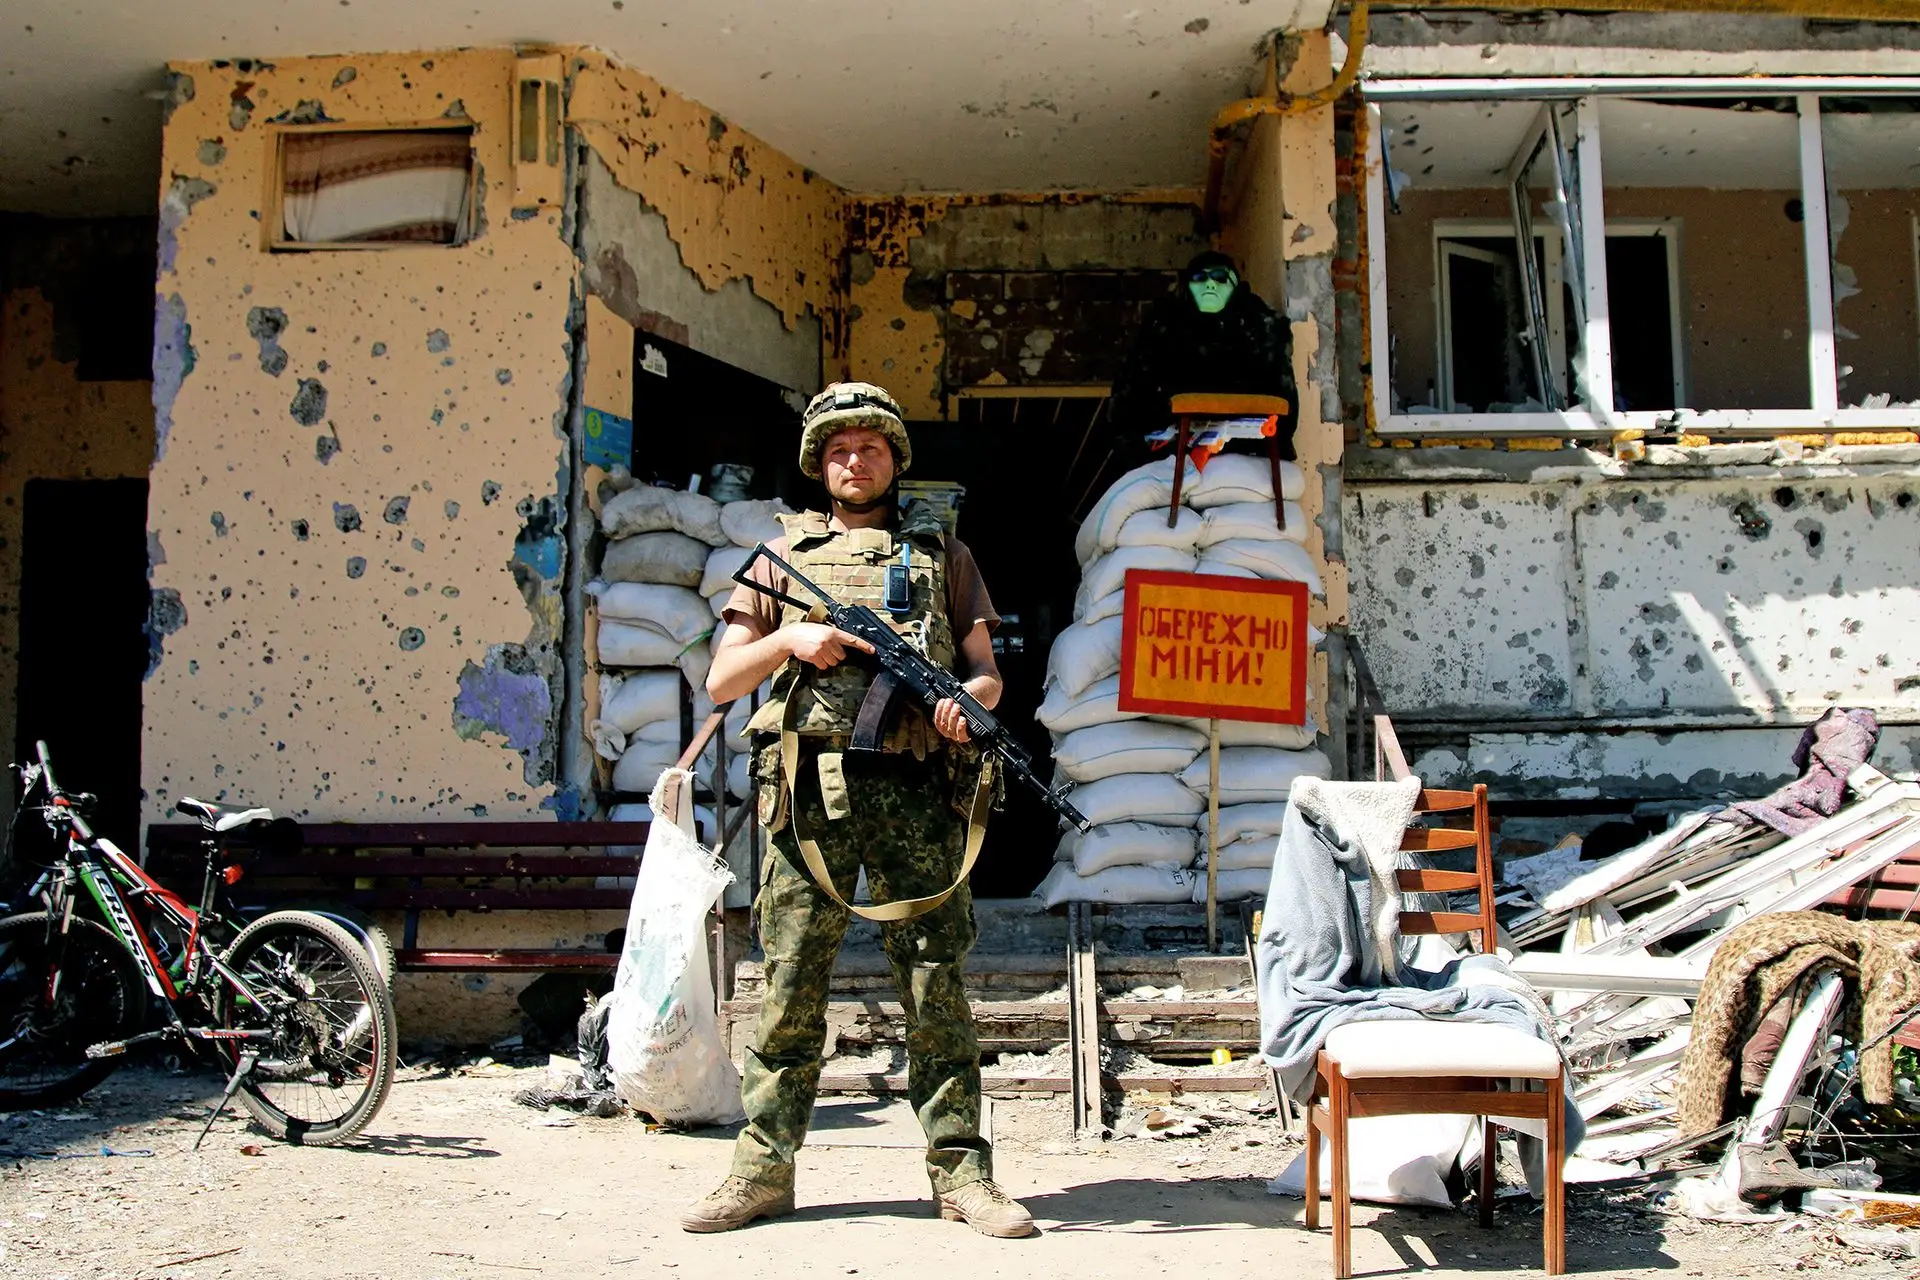 
Заброшенные и разрушенные квартиры приспосабливаются под казарму для солдат и волонтеров
